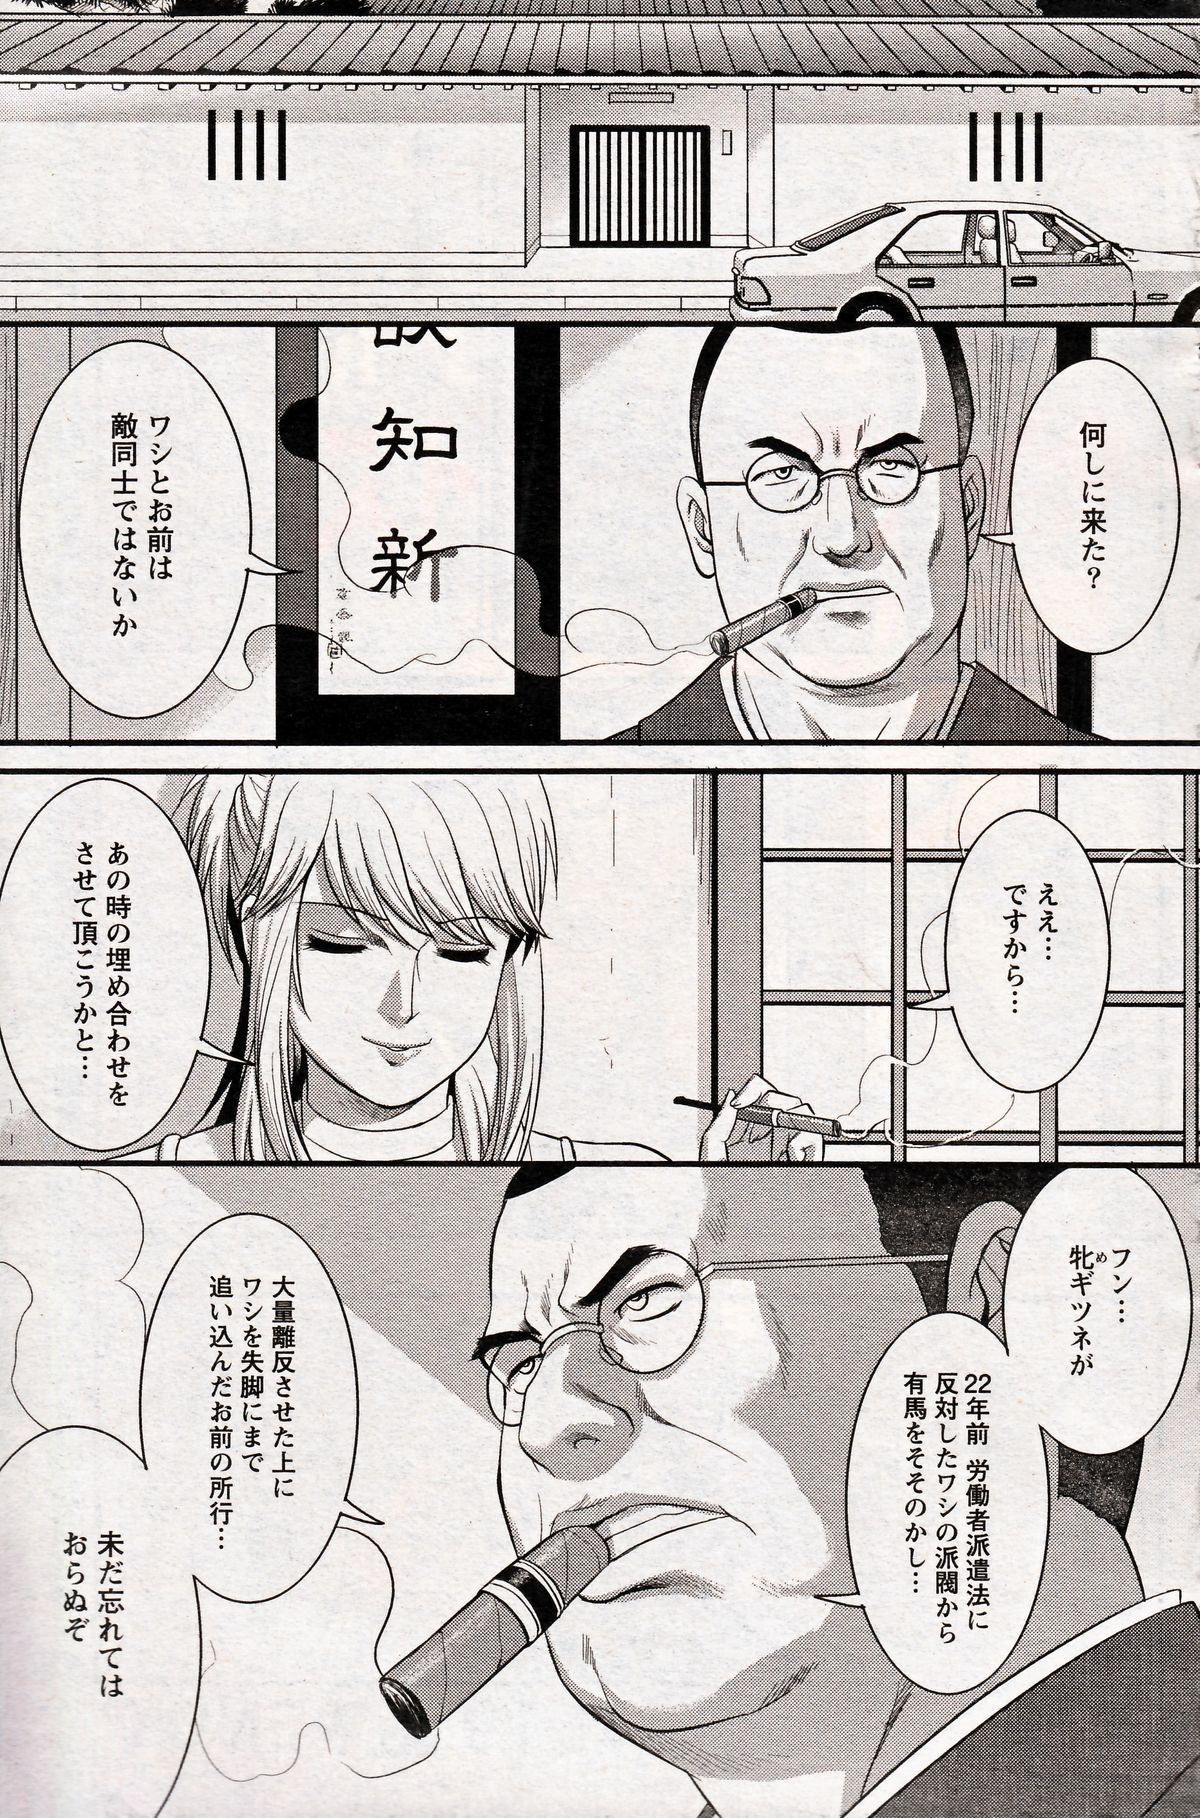 [Saigado] Haken no Muuko-san 19 page 19 full